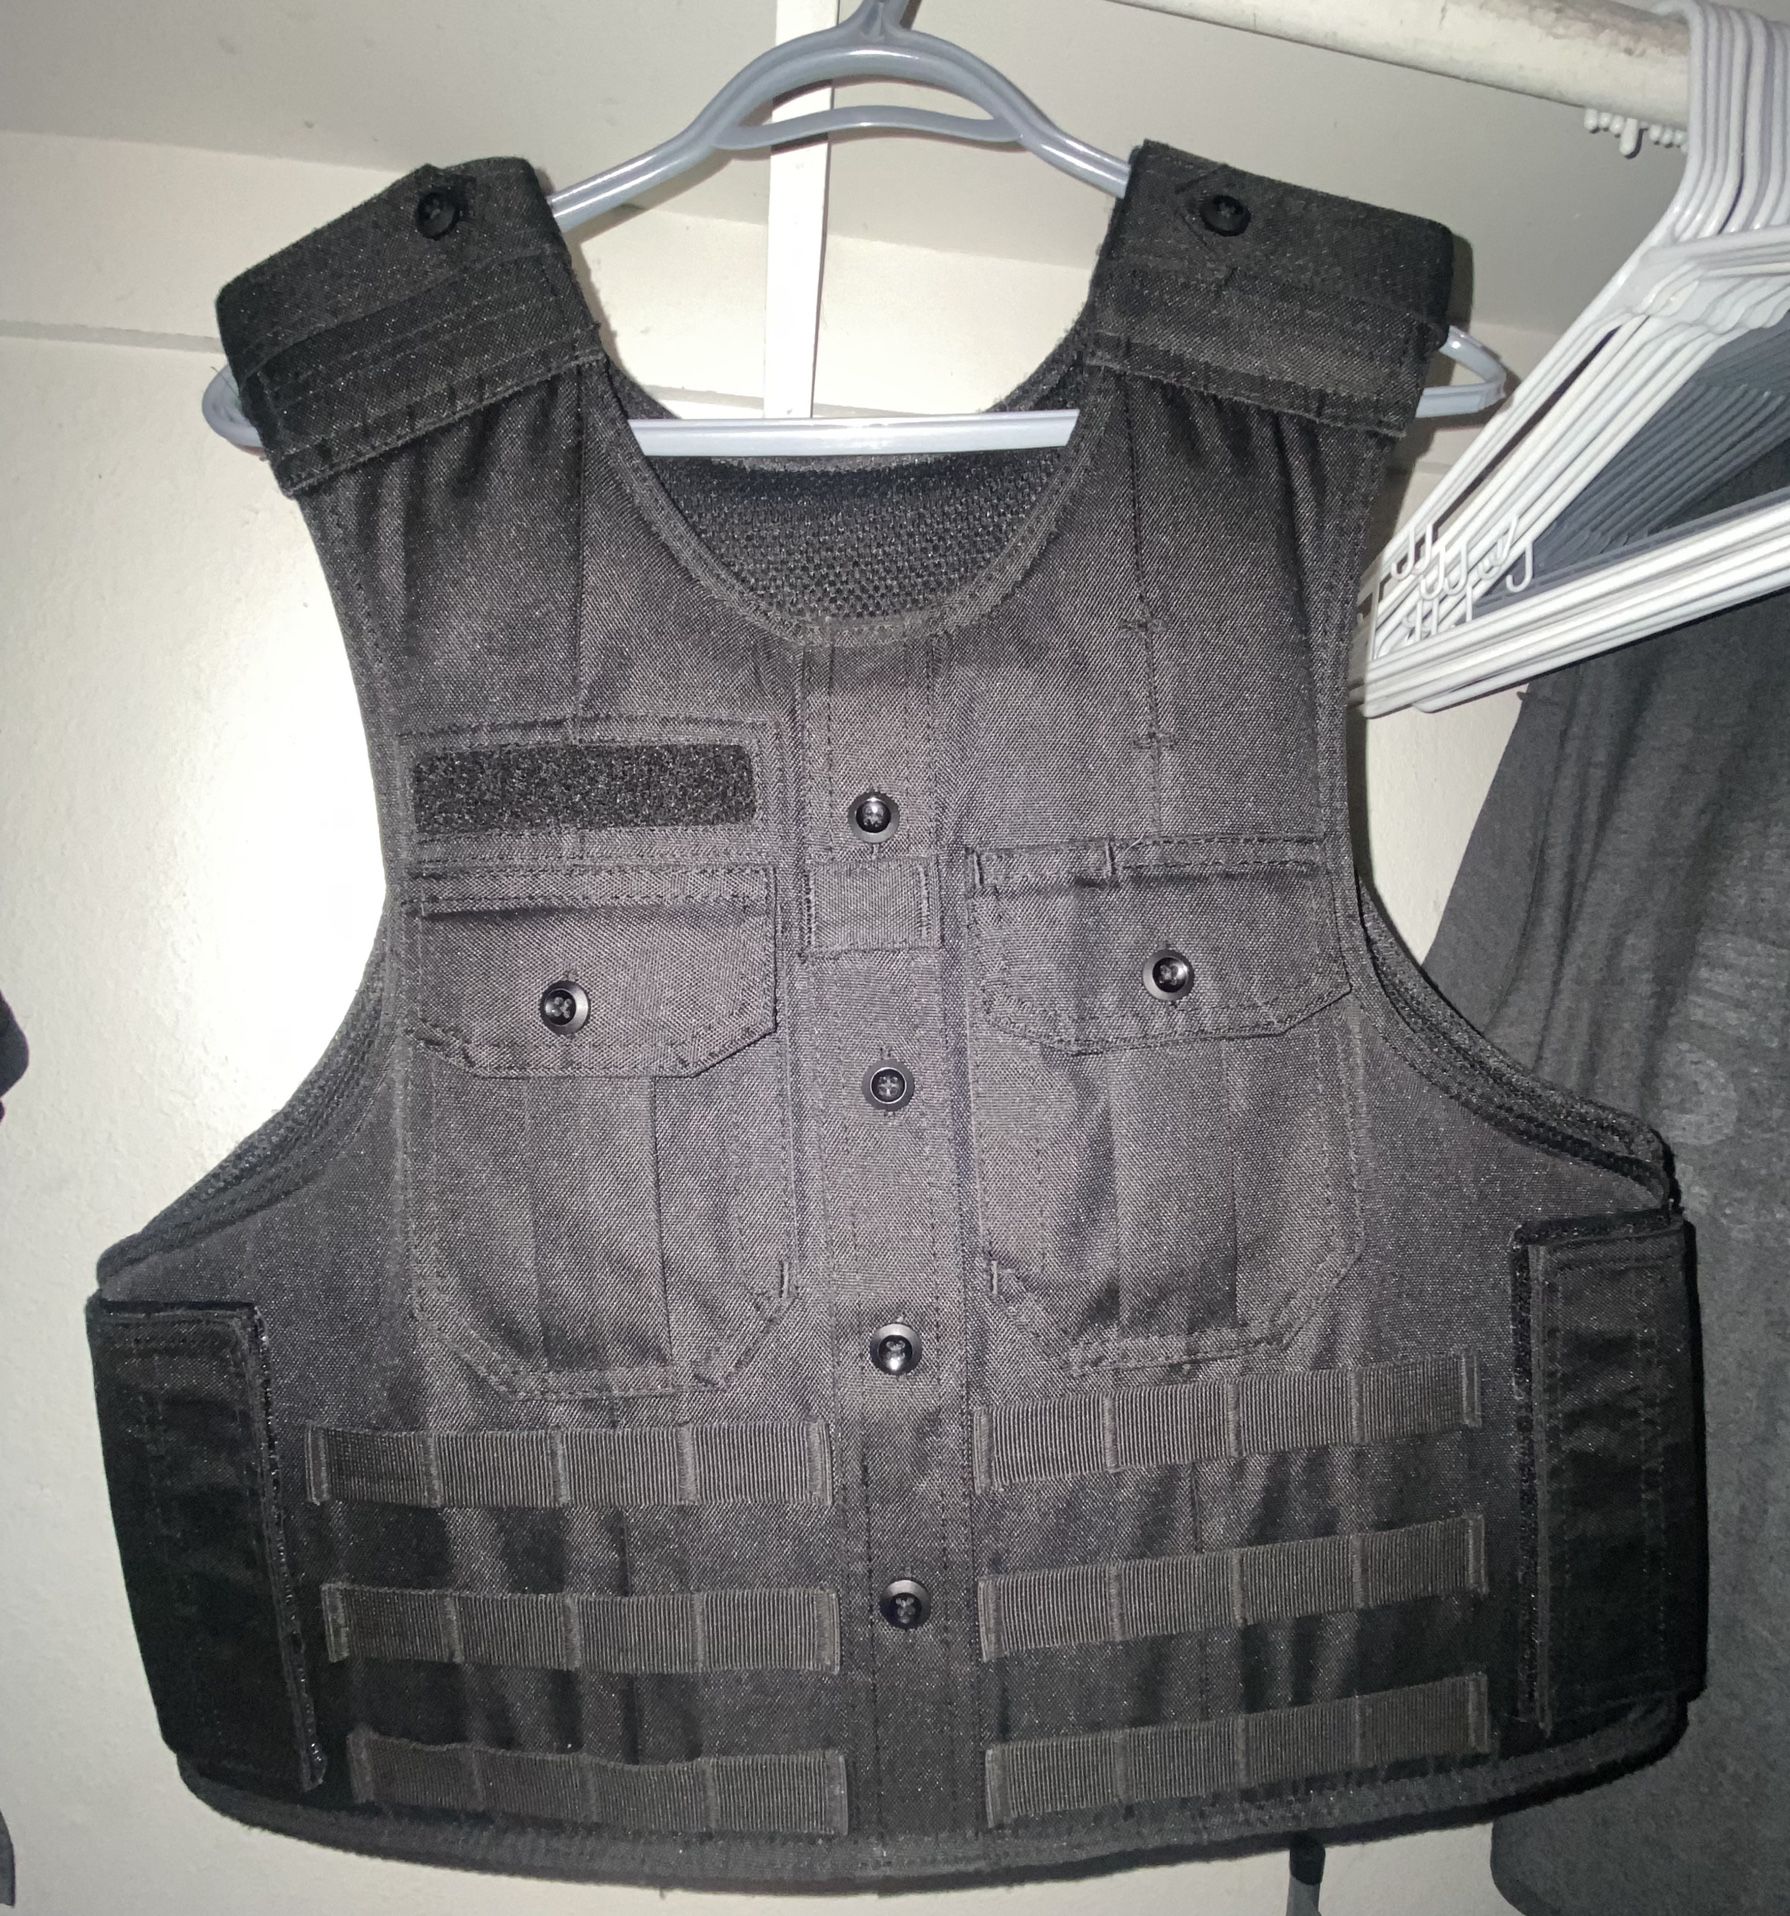 Ballistic Duty Vest Plus Duty Gear 